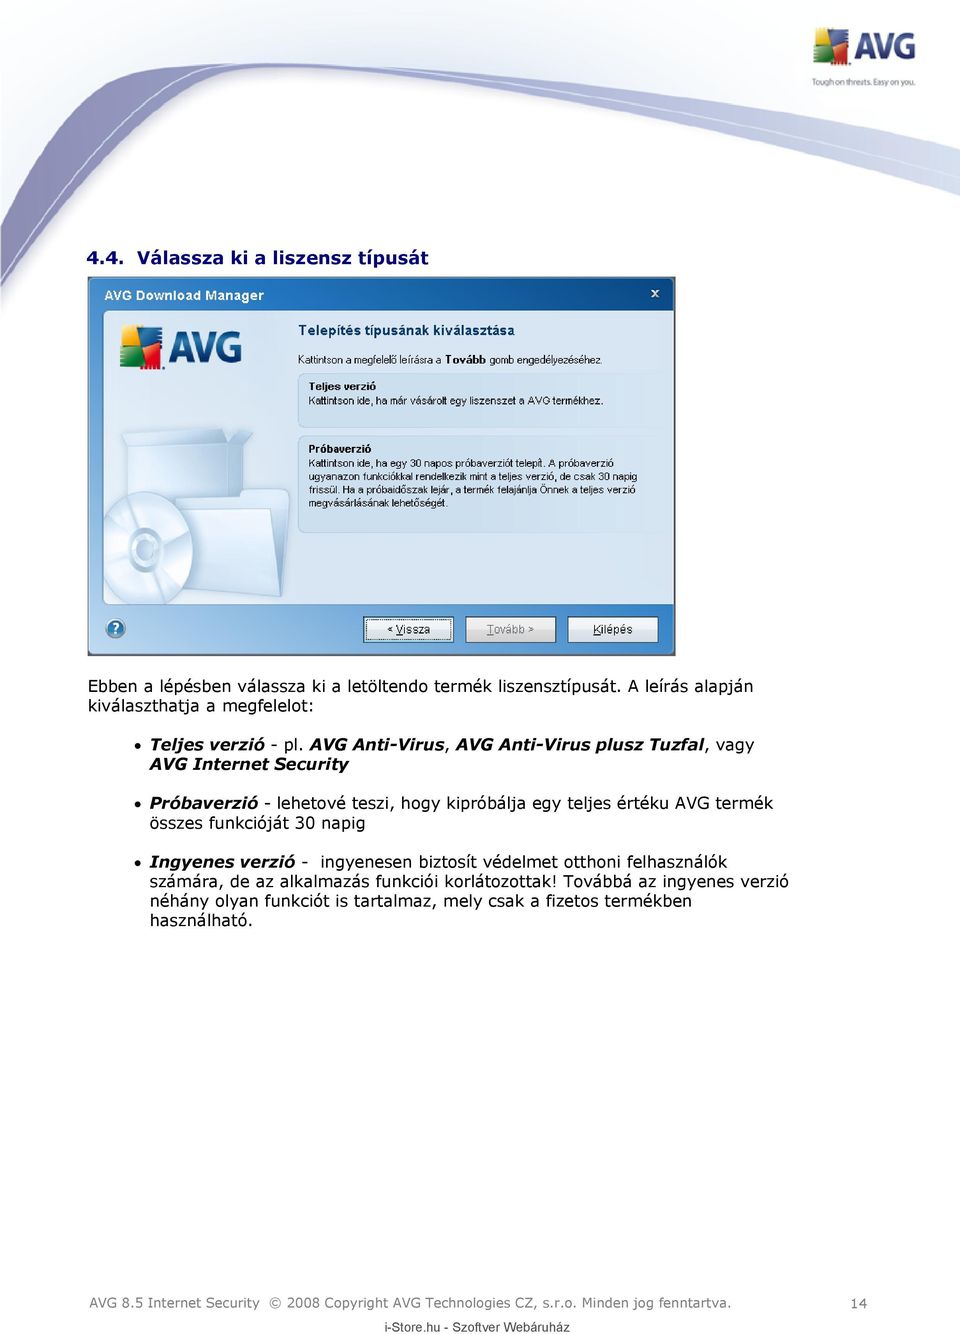 AVG Anti-Virus, AVG Anti-Virus plusz Tuzfal, vagy AVG Internet Security Próbaverzió - lehetové teszi, hogy kipróbálja egy teljes értéku AVG